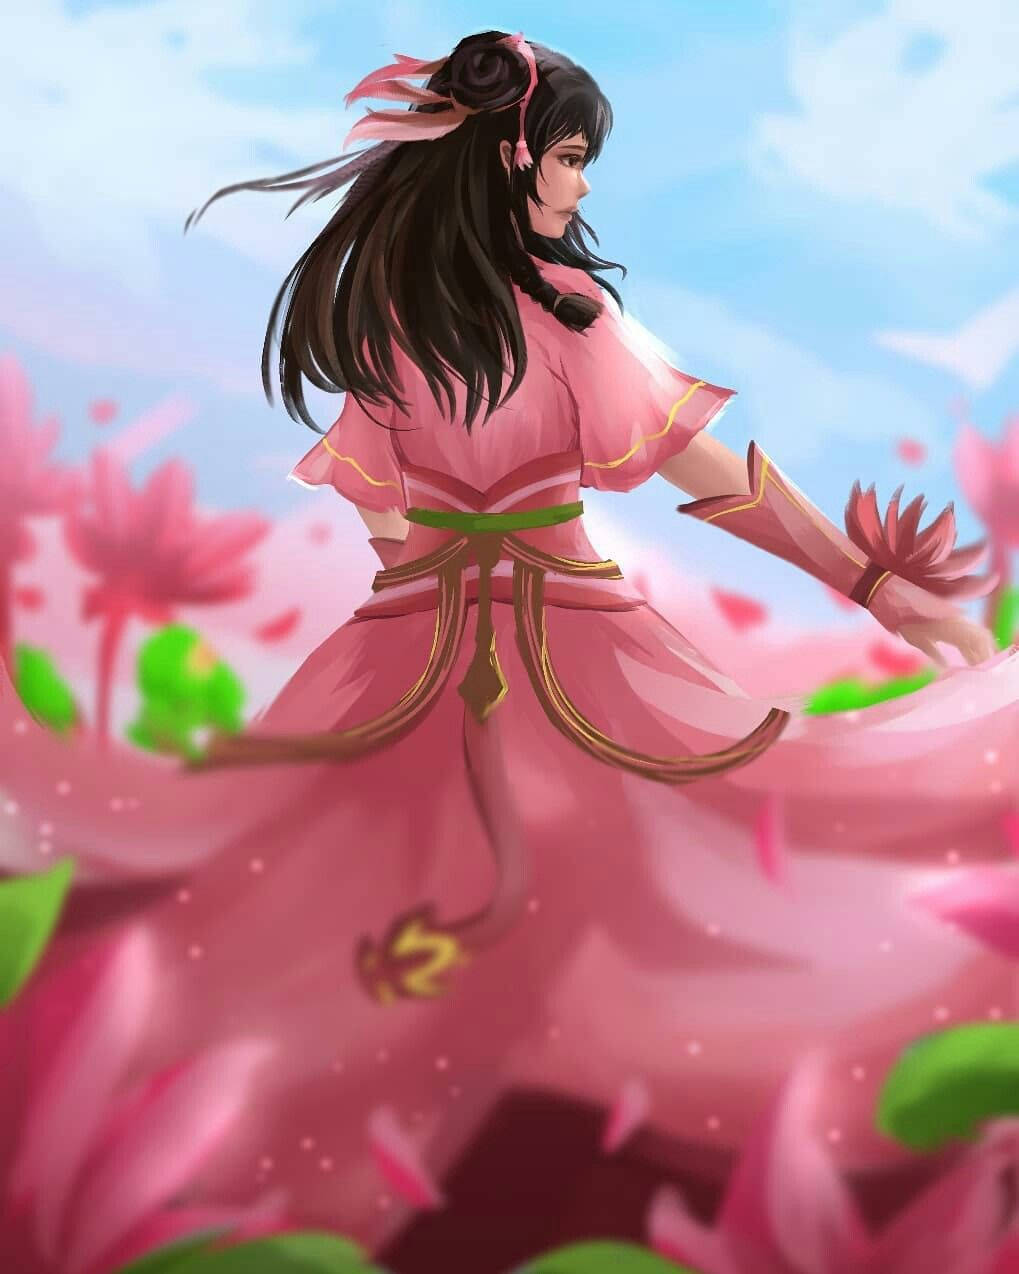 Mobile Legends Guinevere Lotus Pink Dress Background